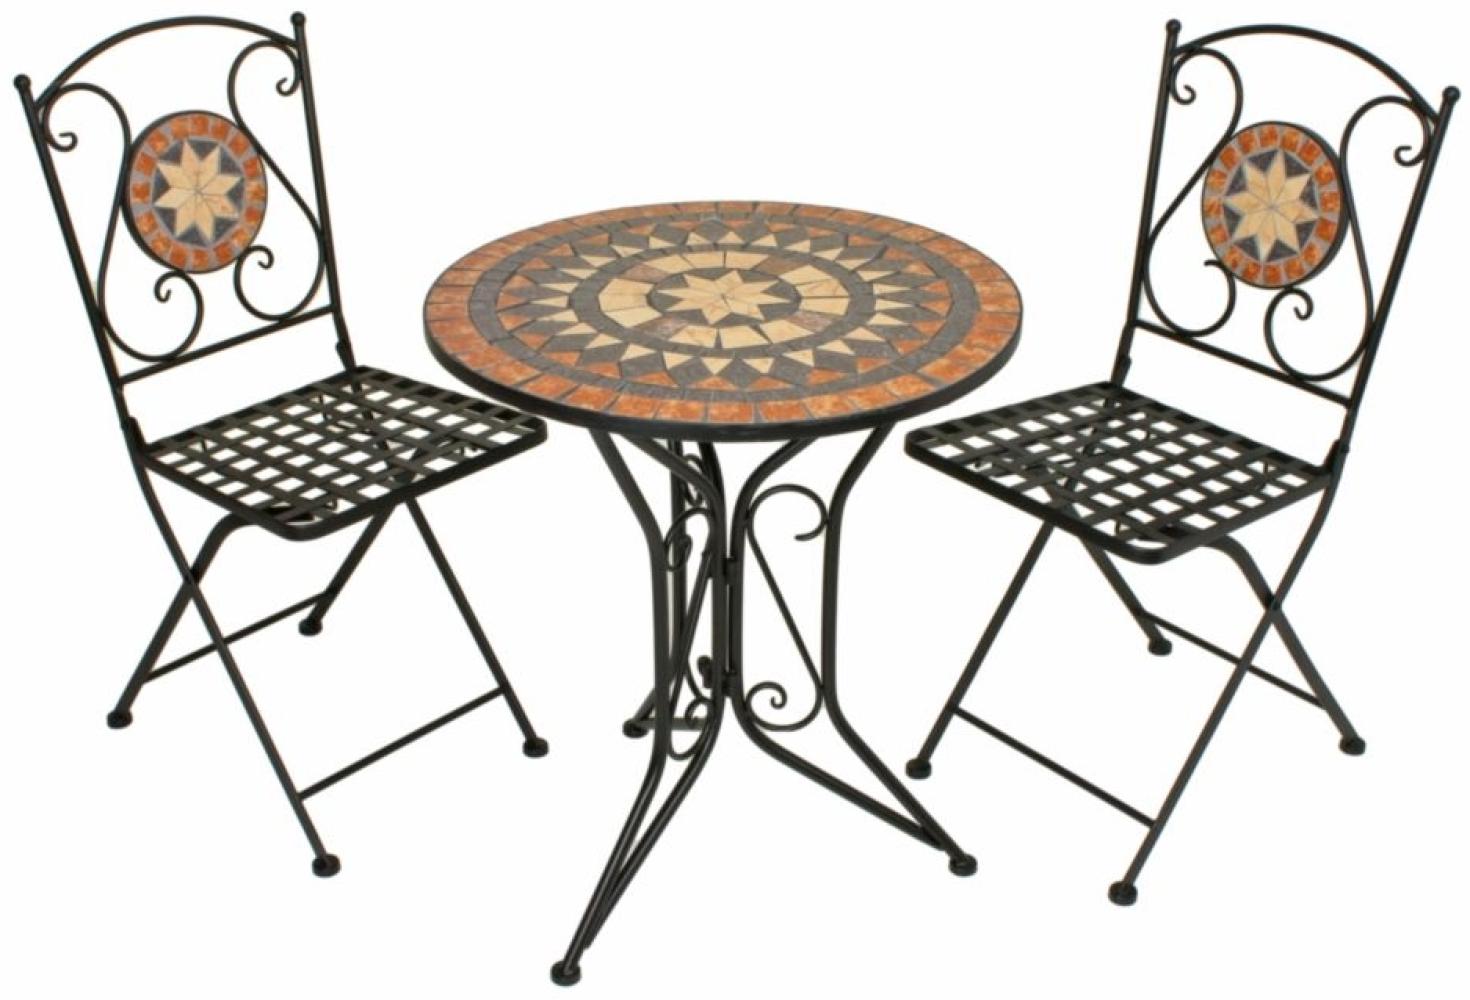 3tlg. Balkon Set Mosaik Garten Terrasse Metall Stuhl Tisch Beistelltisch Stühle Bild 1